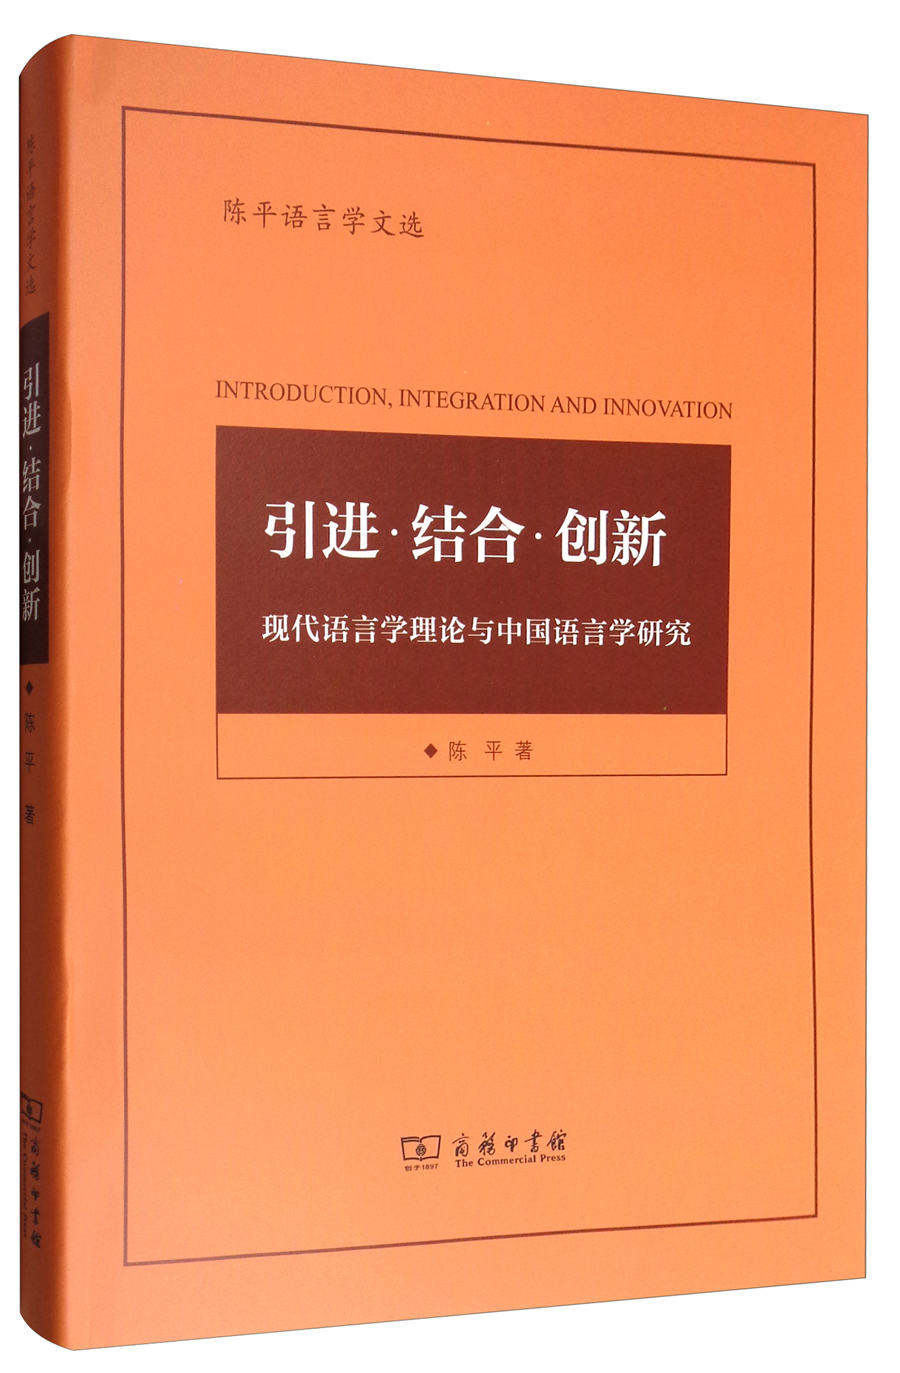 陈平语言学文选 引进·结合·创新：现代语言学理论与中国语言学研究